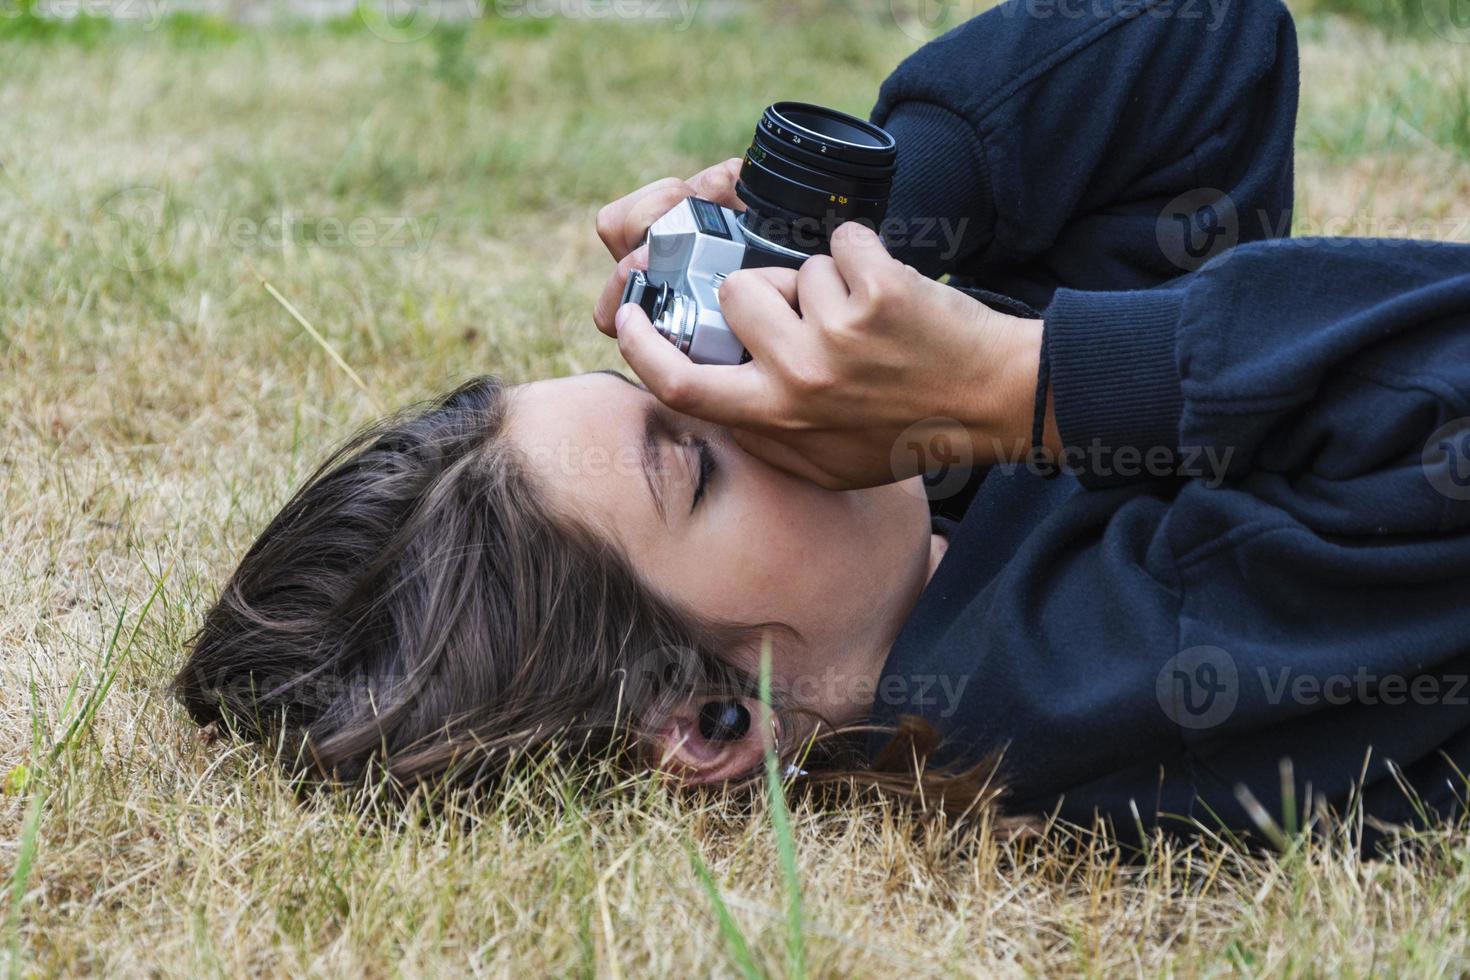 linda garota adolescente com uma câmera, uma garota tirando fotos em uma câmera vintage retrô na grama do parque, um conceito de hobby